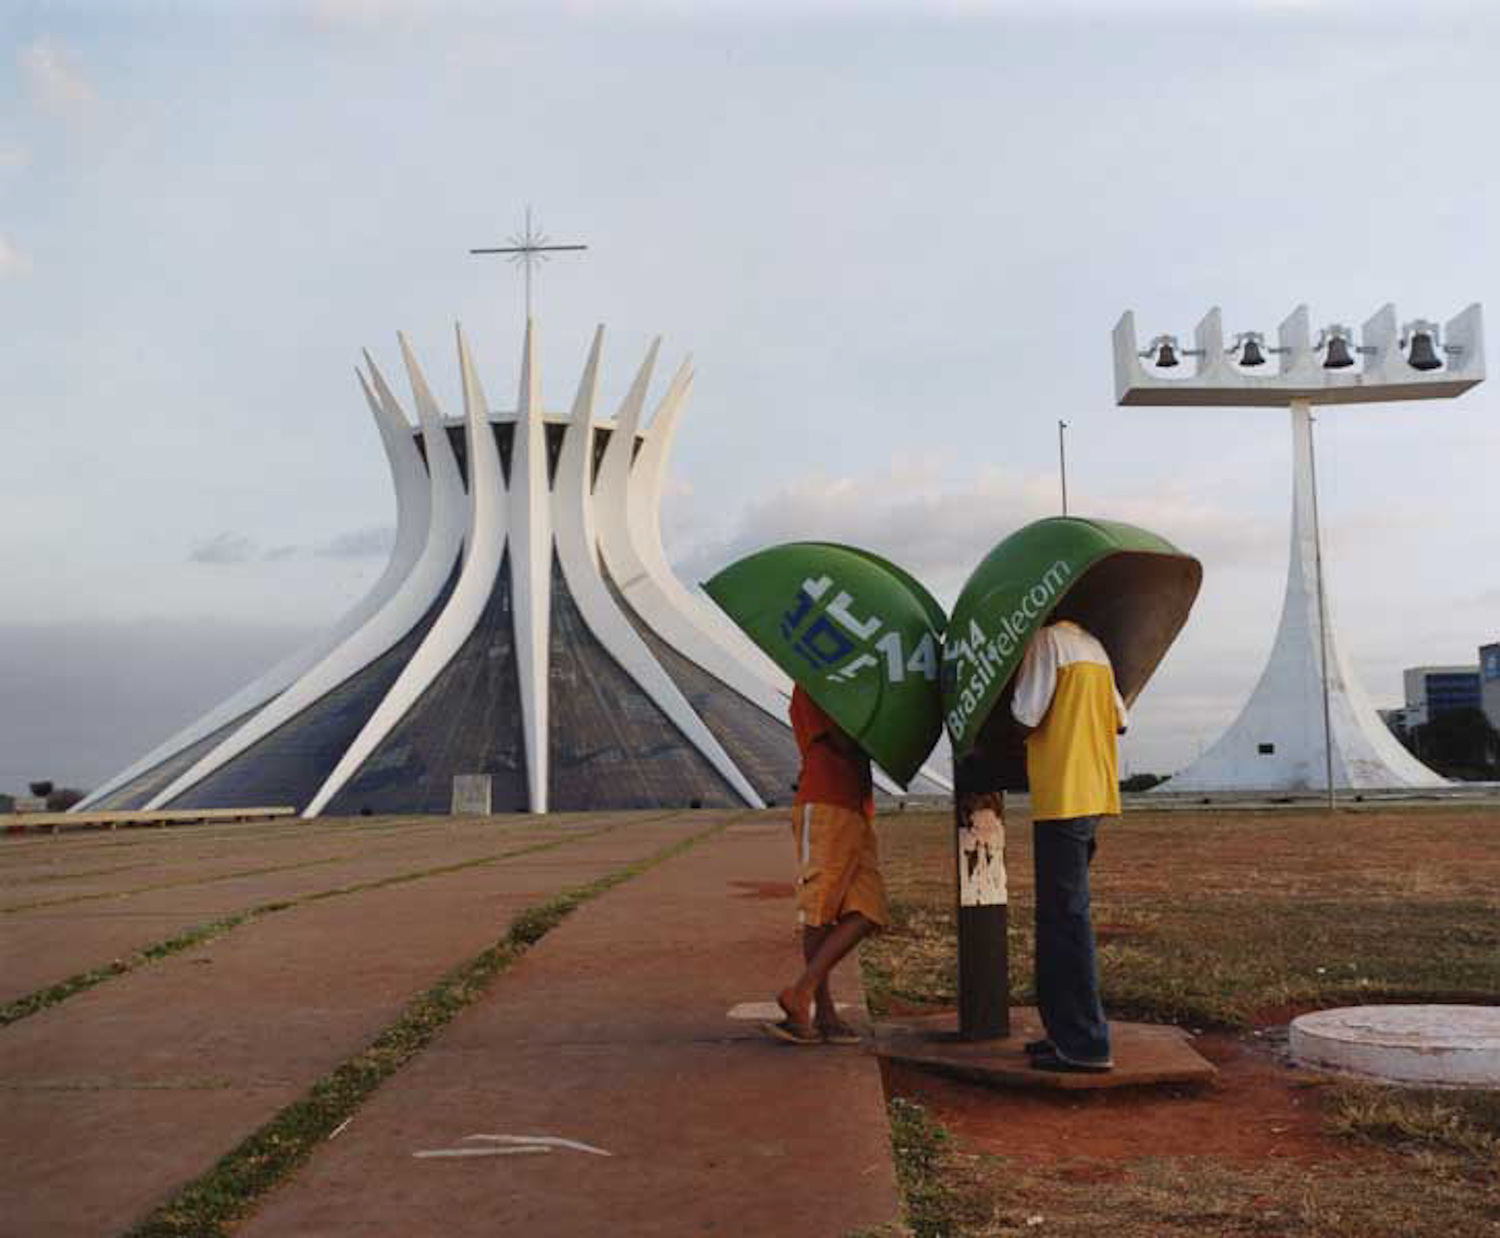 Brasilia, Brazil